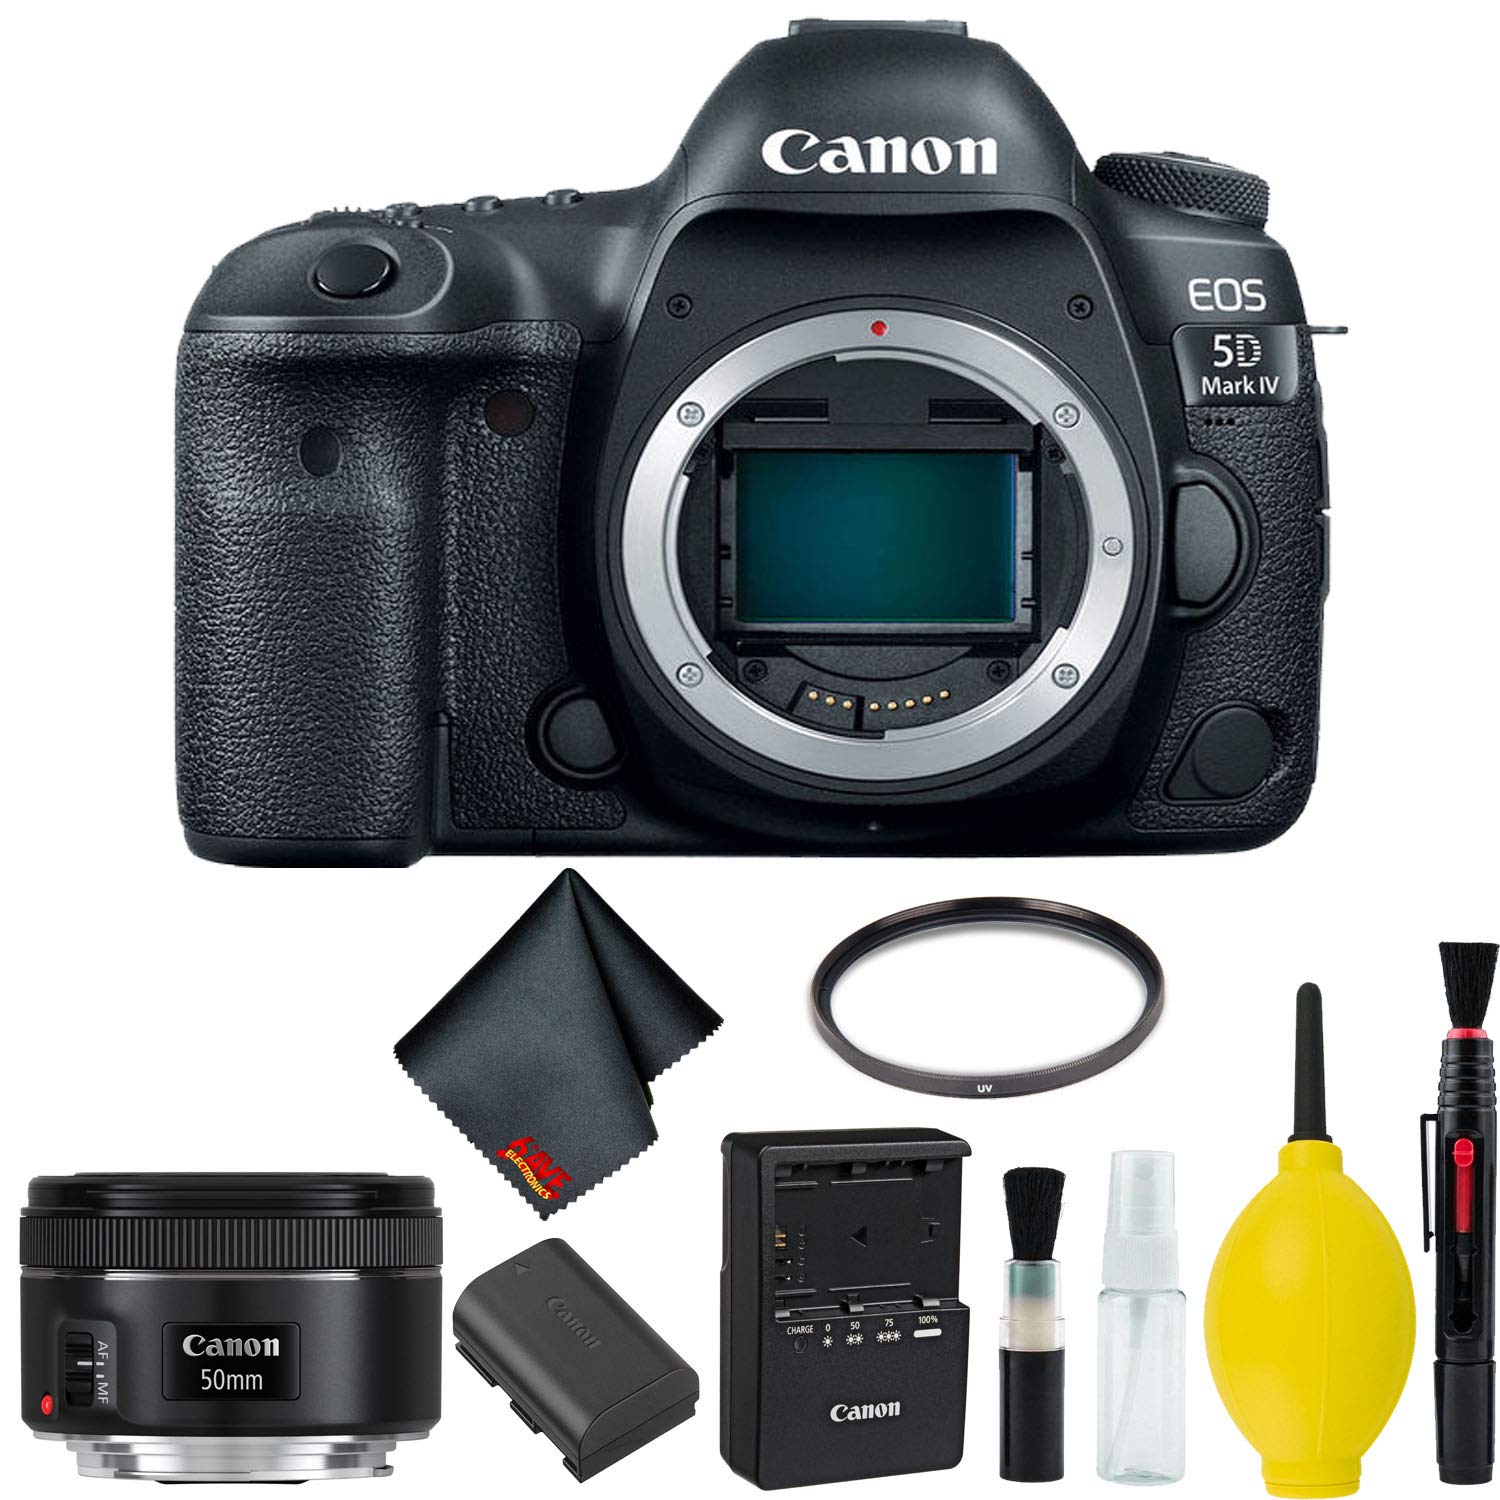 Canon EOS 5D Mark IV DSLR Camera Body Only Basic Kit (International Model) w/Canon EF 50mm f/1.8 STM Lens - International